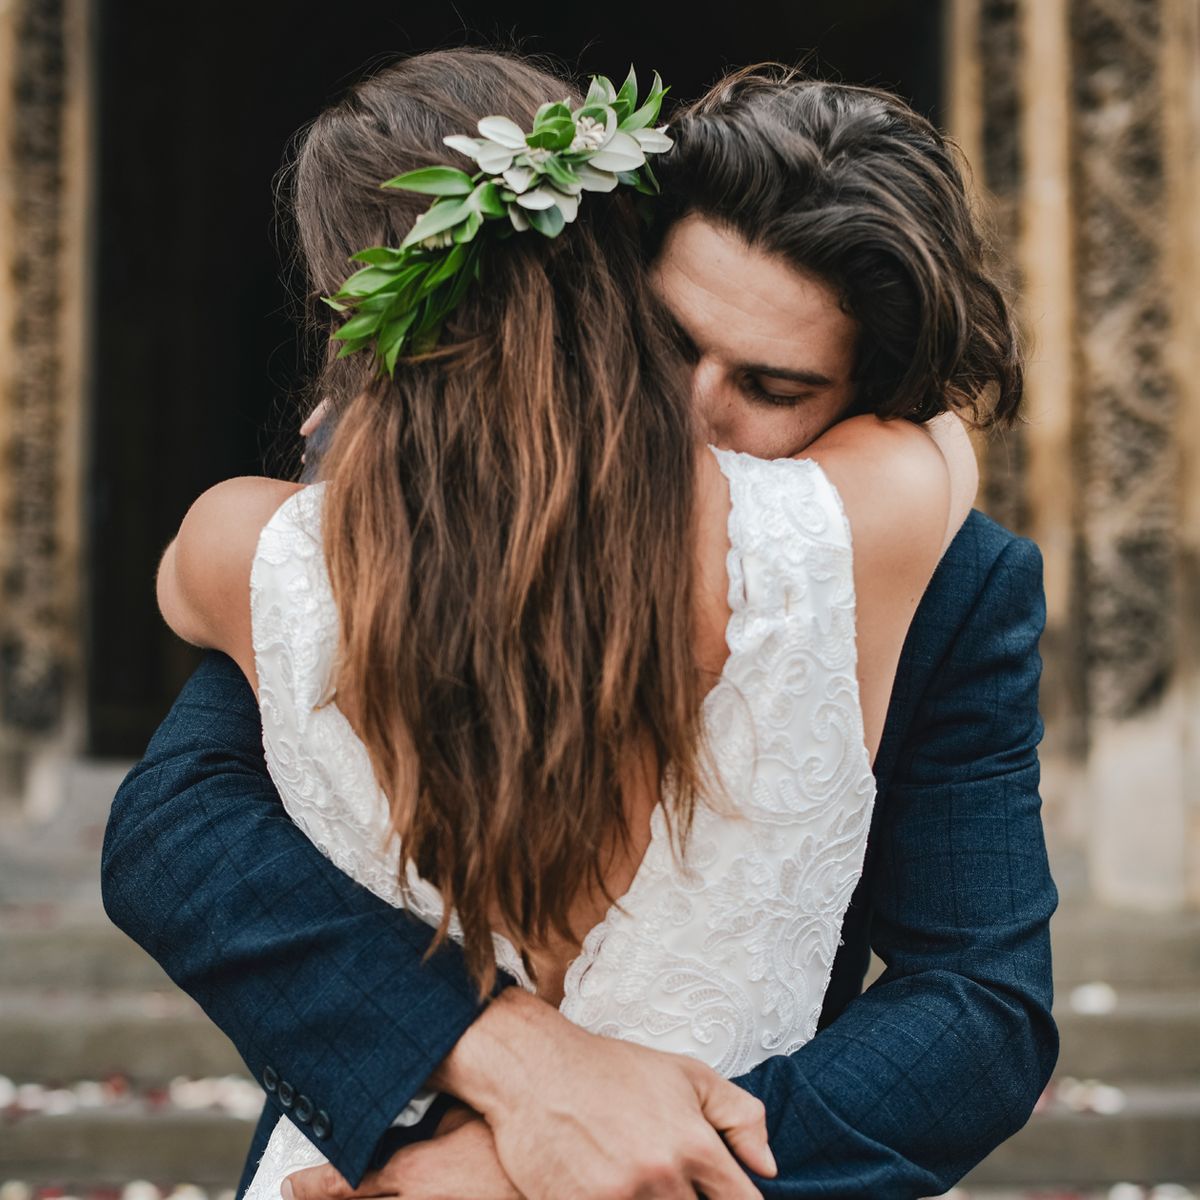 Nicht alle Hochzeitstraditionen haben einen romantischen Ursprung, manche sind regelrecht skurril.